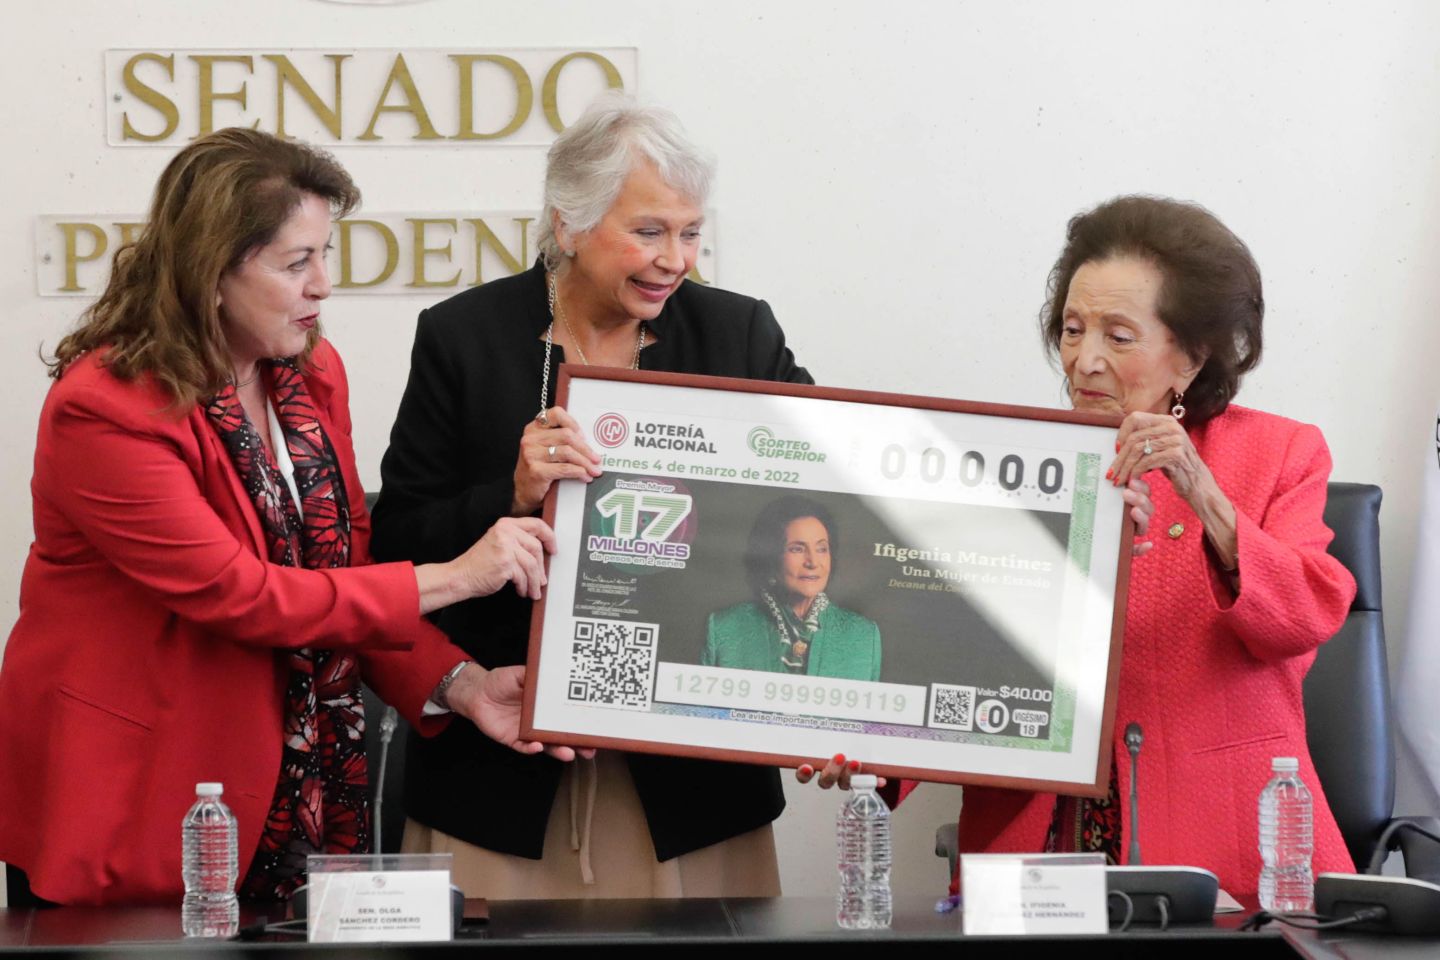 Emiten billete de lotería en homenaje a la senadora Ifigenia Martínez